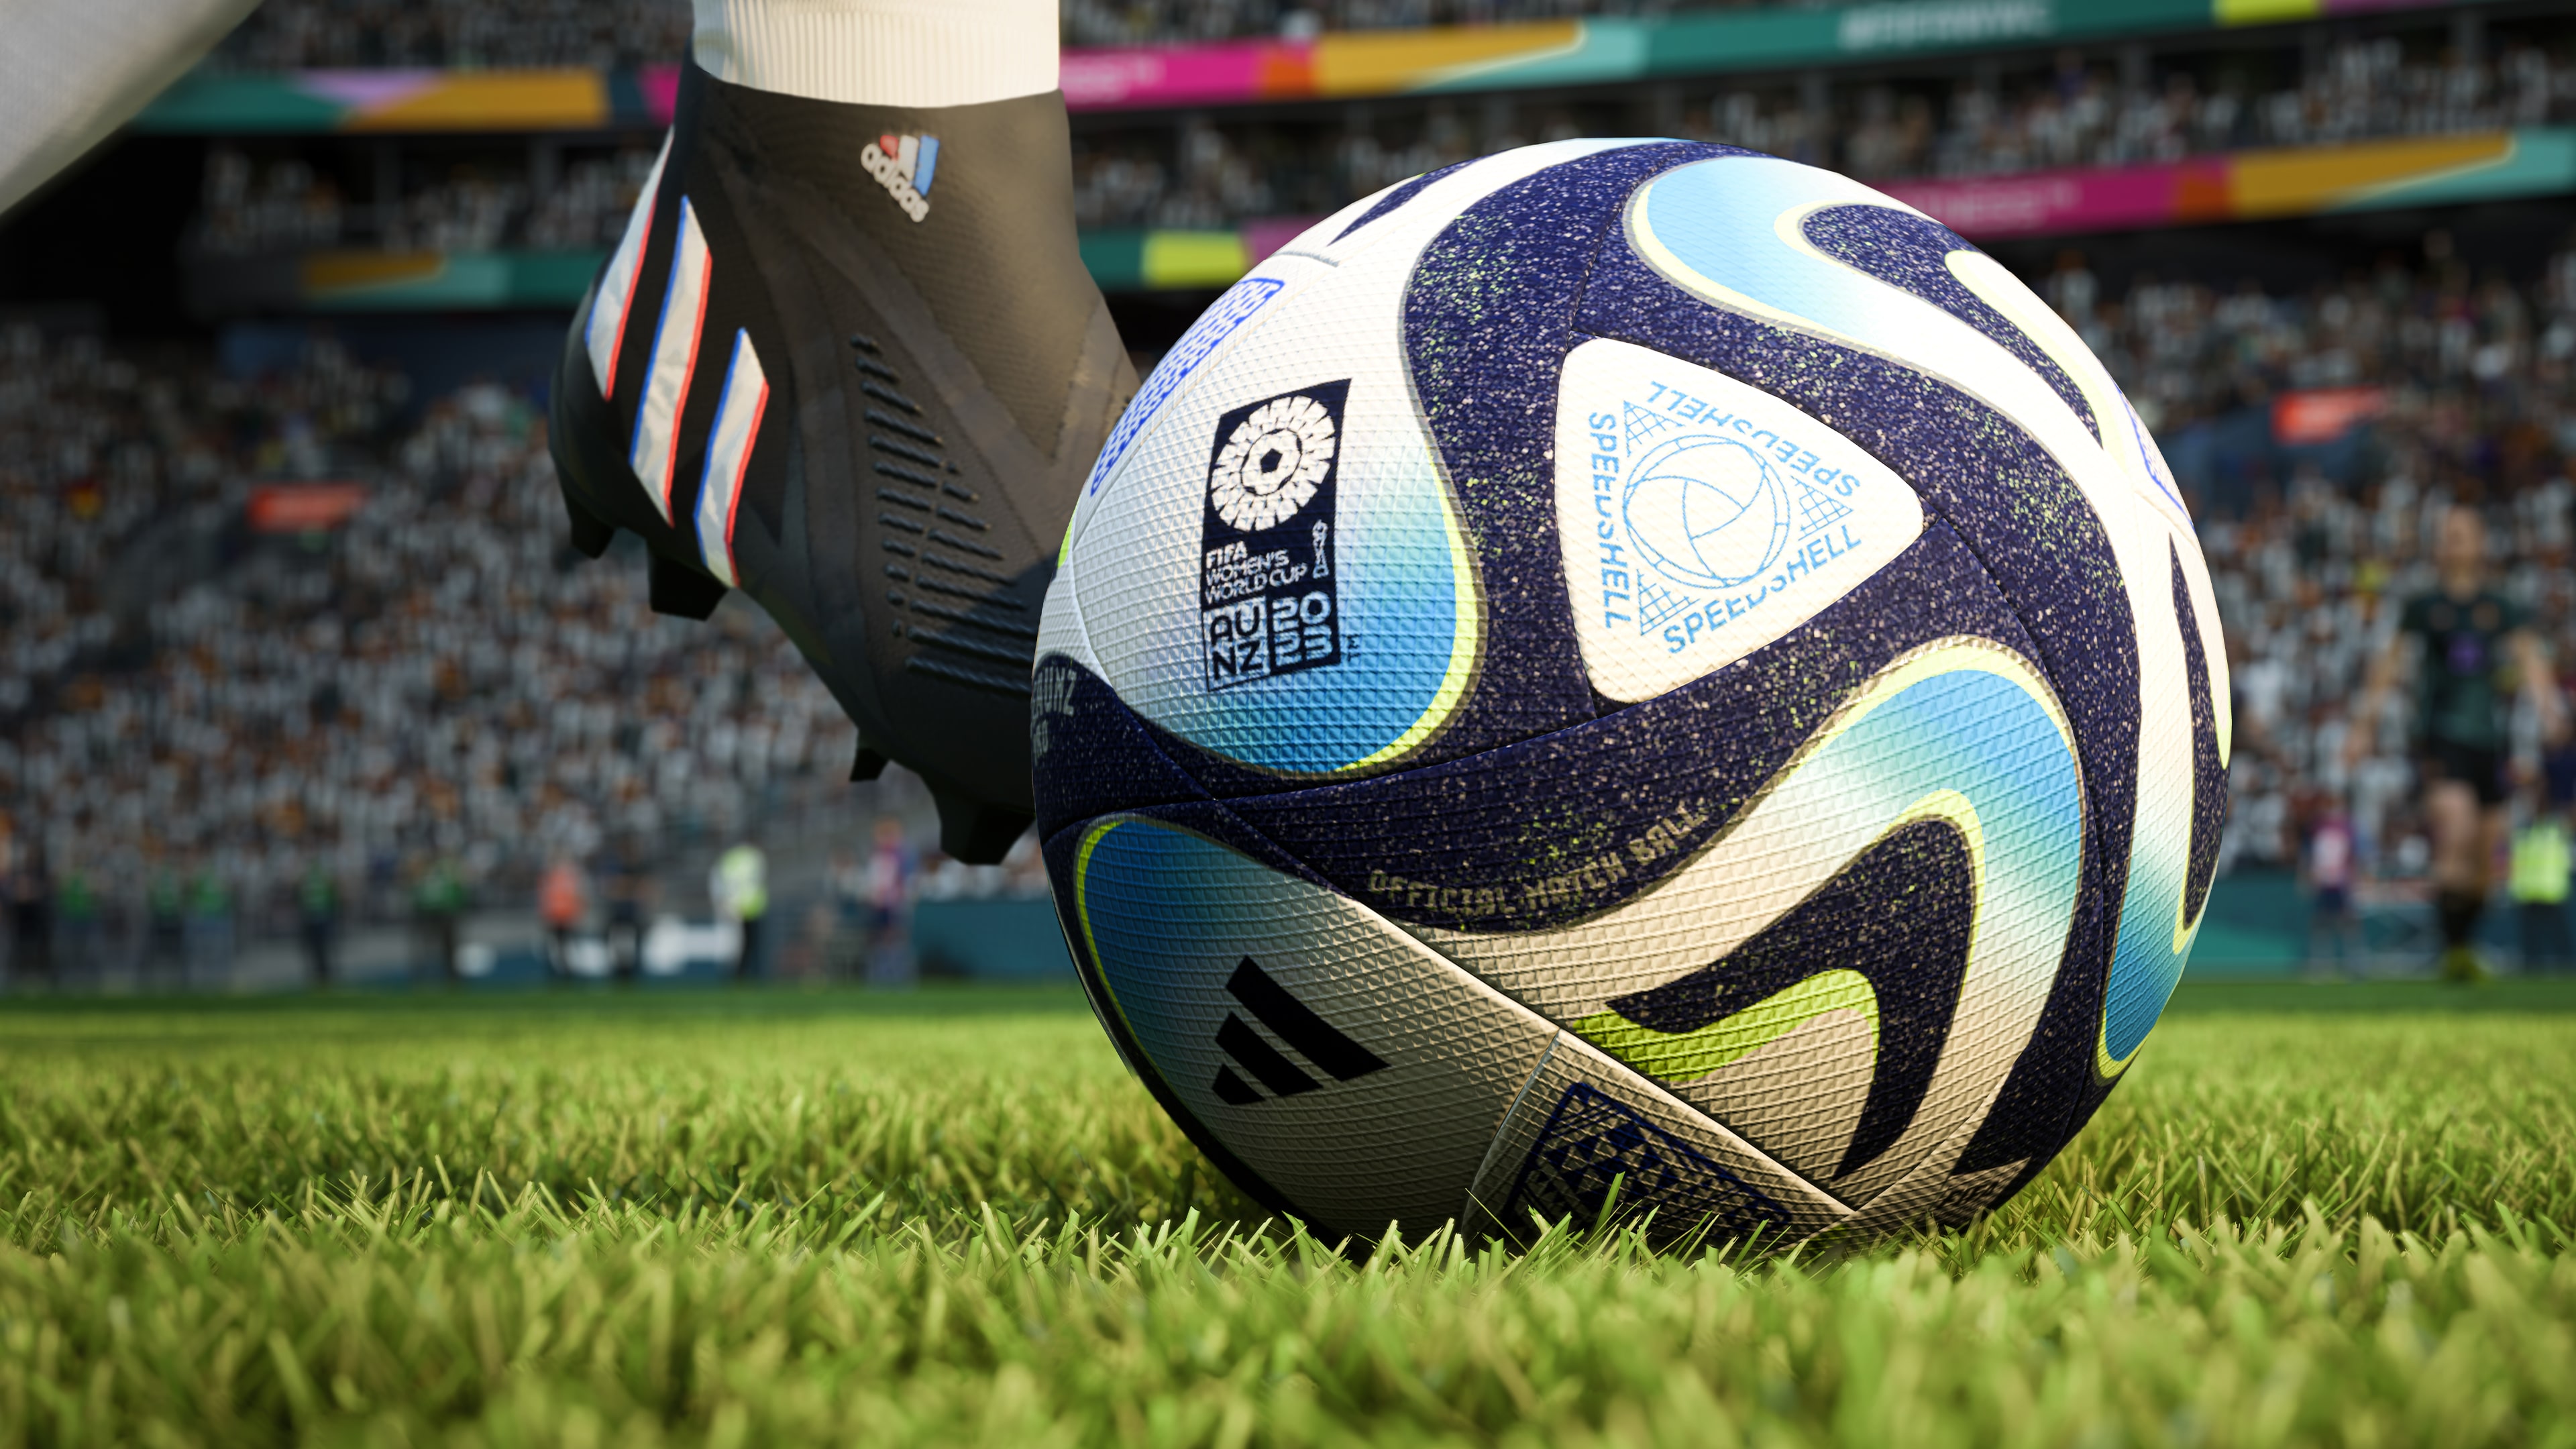 EA SPORTS™ FIFA 23